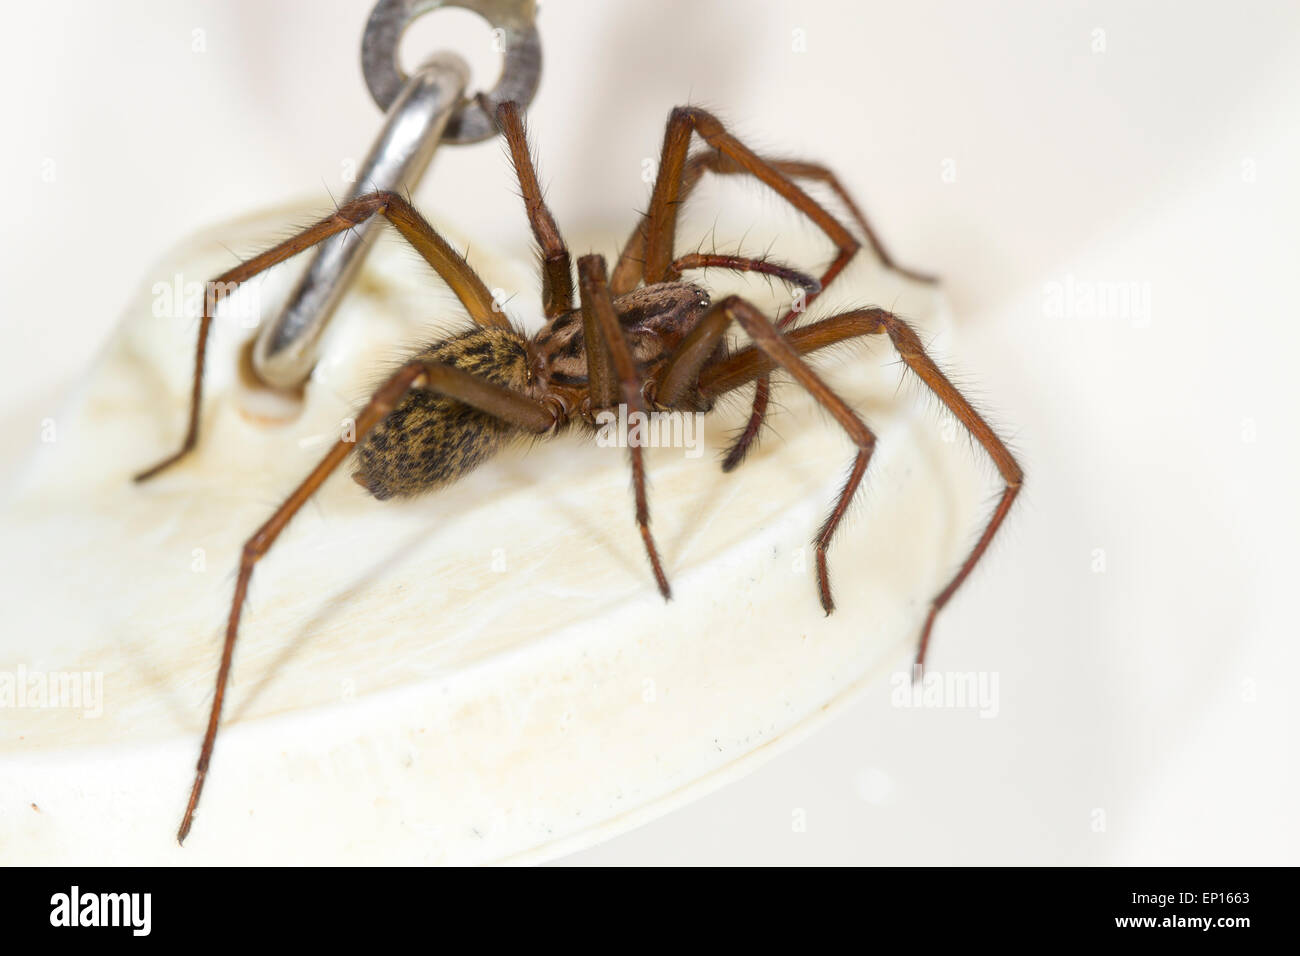 Araignée des maisons (Tegenaria sp.) femelle adulte dans un bain. Powys, Pays de Galles. Janvier. Banque D'Images